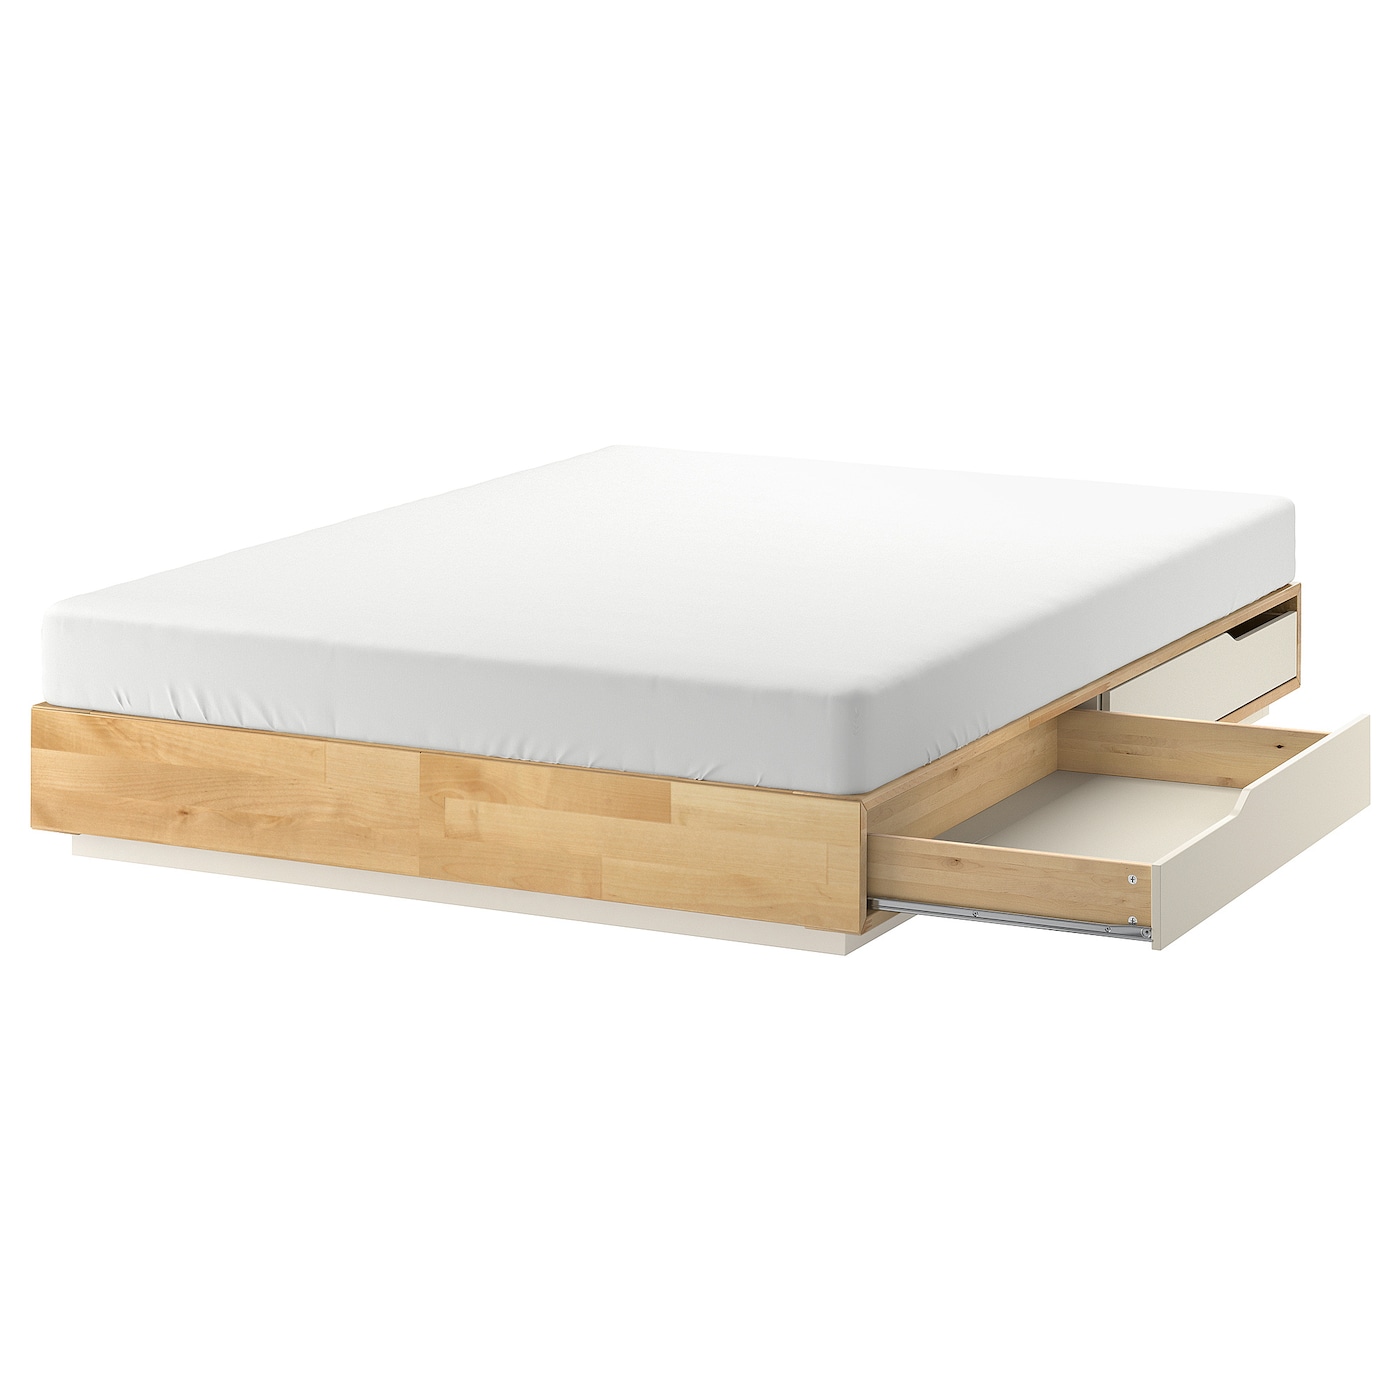 Основание двуспальной кровати с выдвижными ящиками - IKEA MANDAL, 200х160 см, береза/белый, МАНДАЛЬ ИКЕА